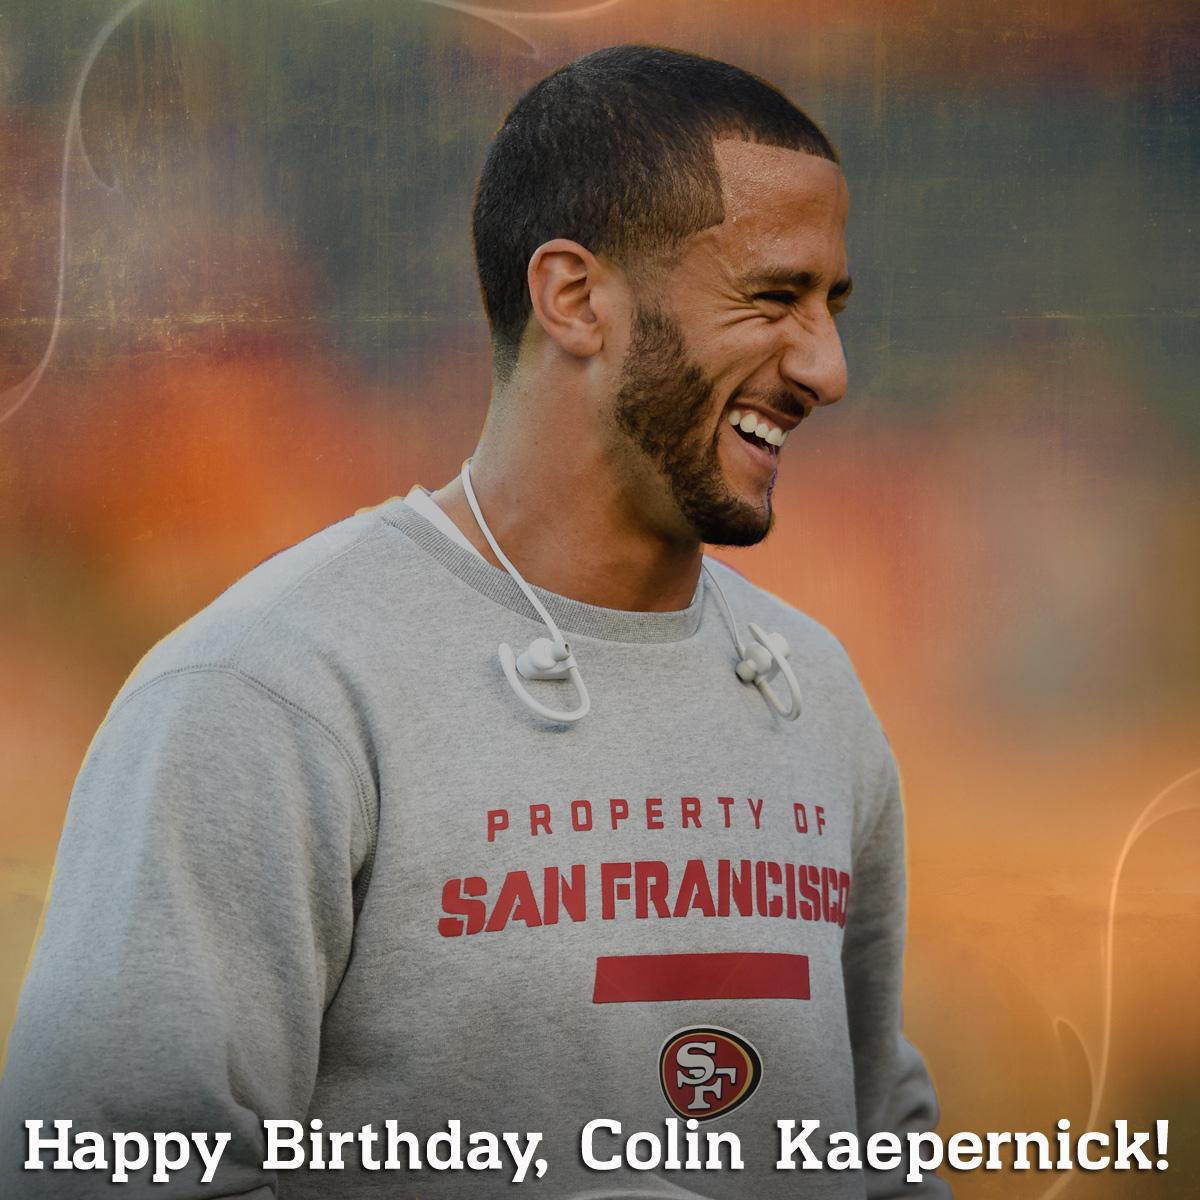 To wish Colin Kaepernick a Happy Birthday! 